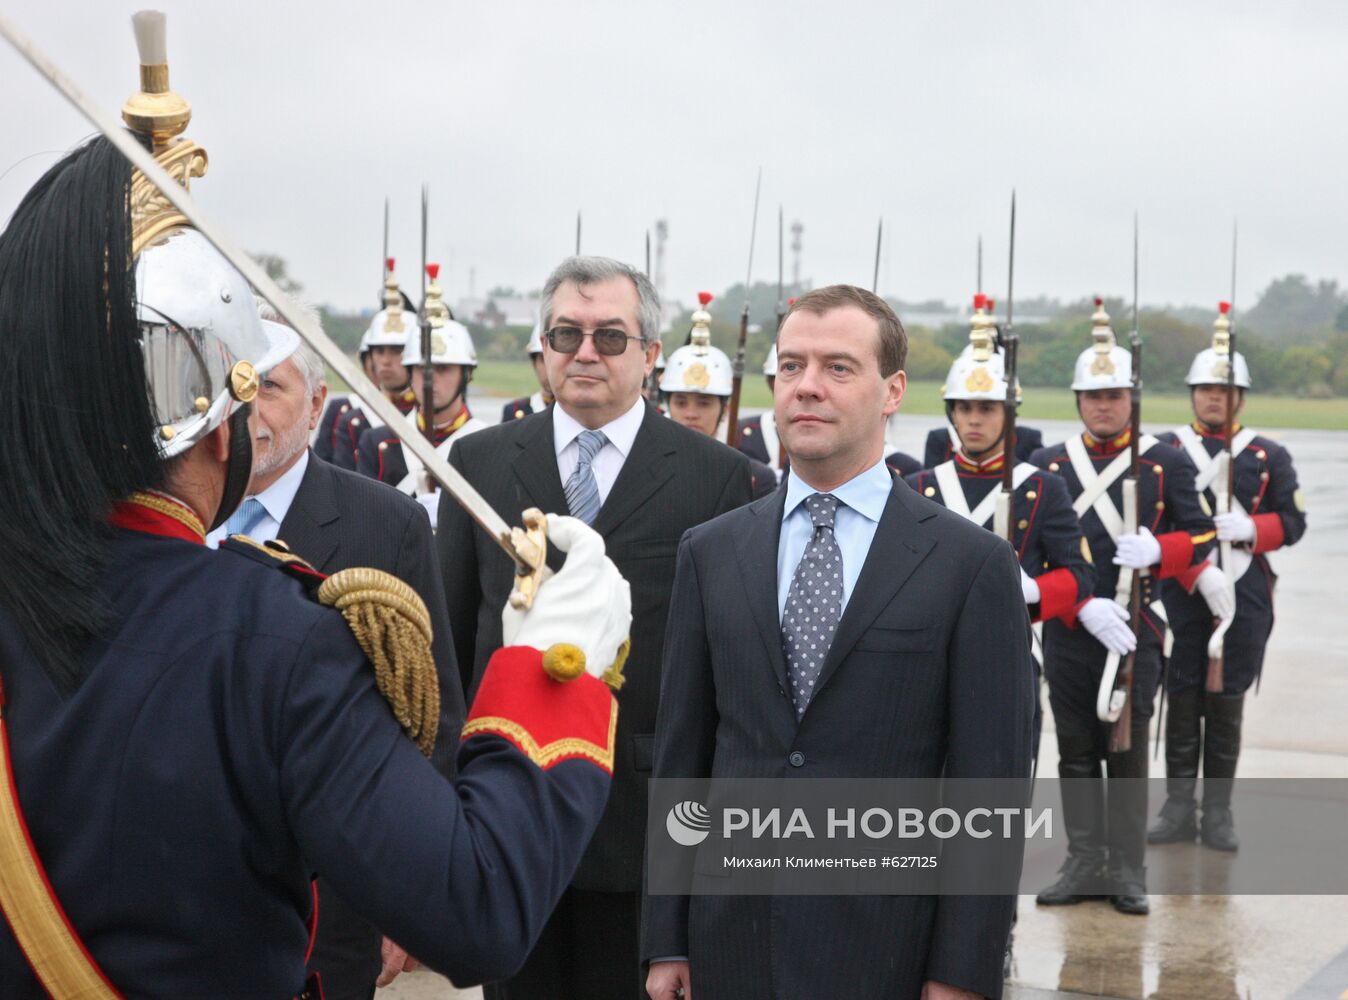 Официальный визит в Аргентину Д.Медведева